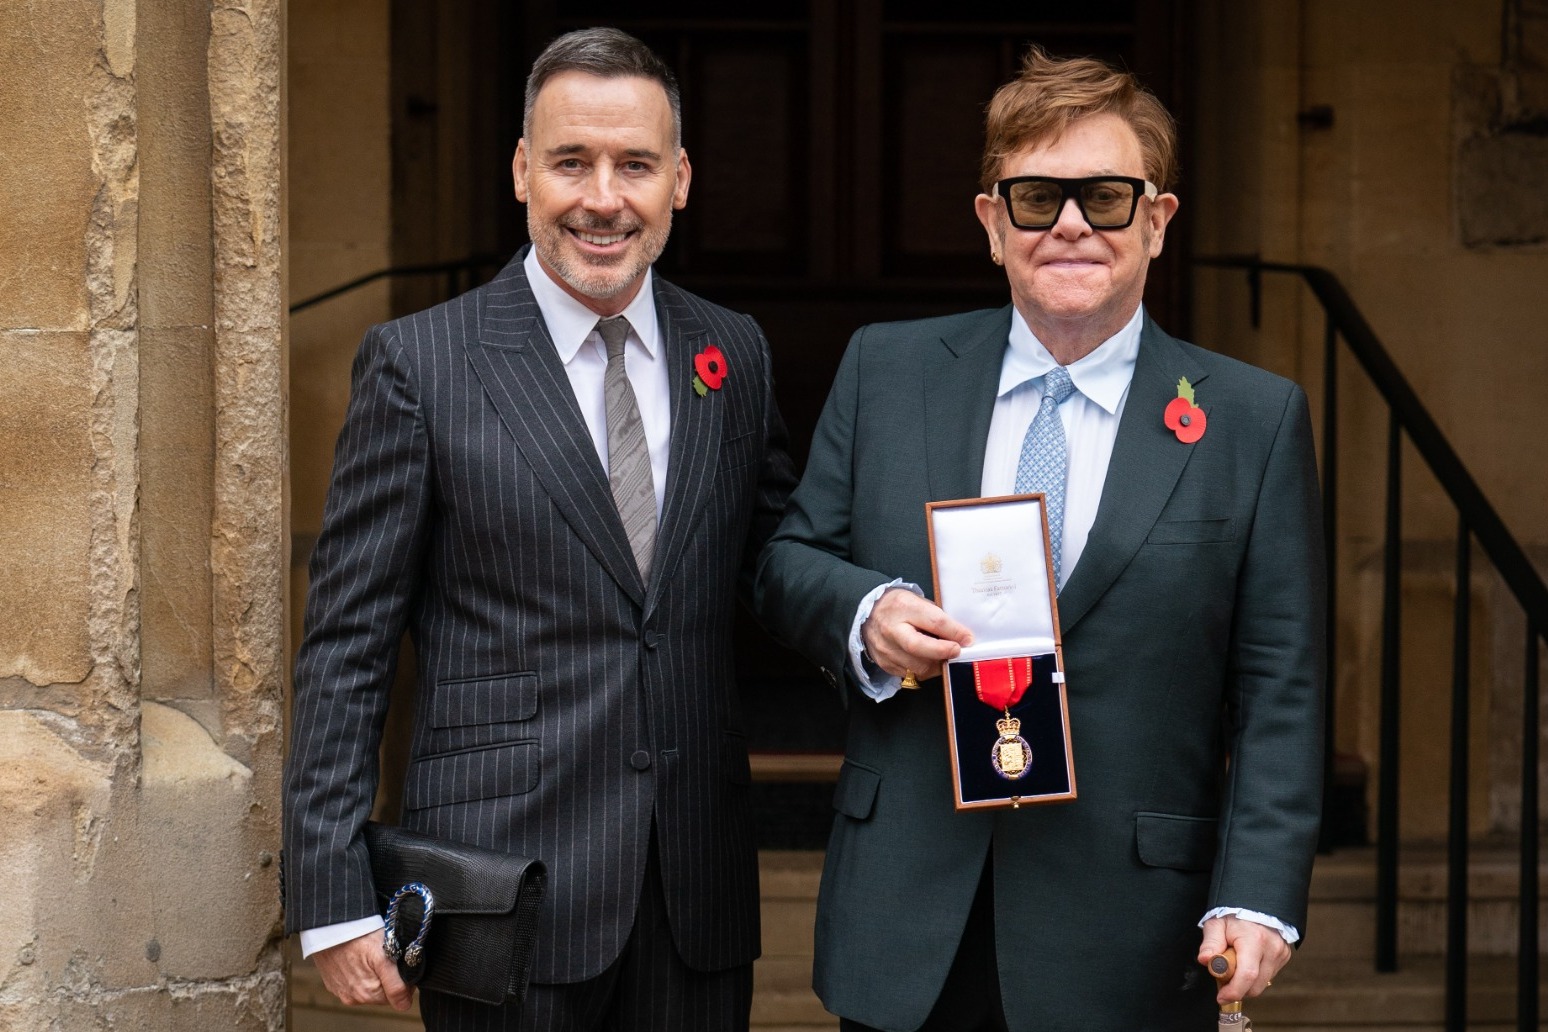 Sir Elton John ‘raring’ to make new music after hip operation 